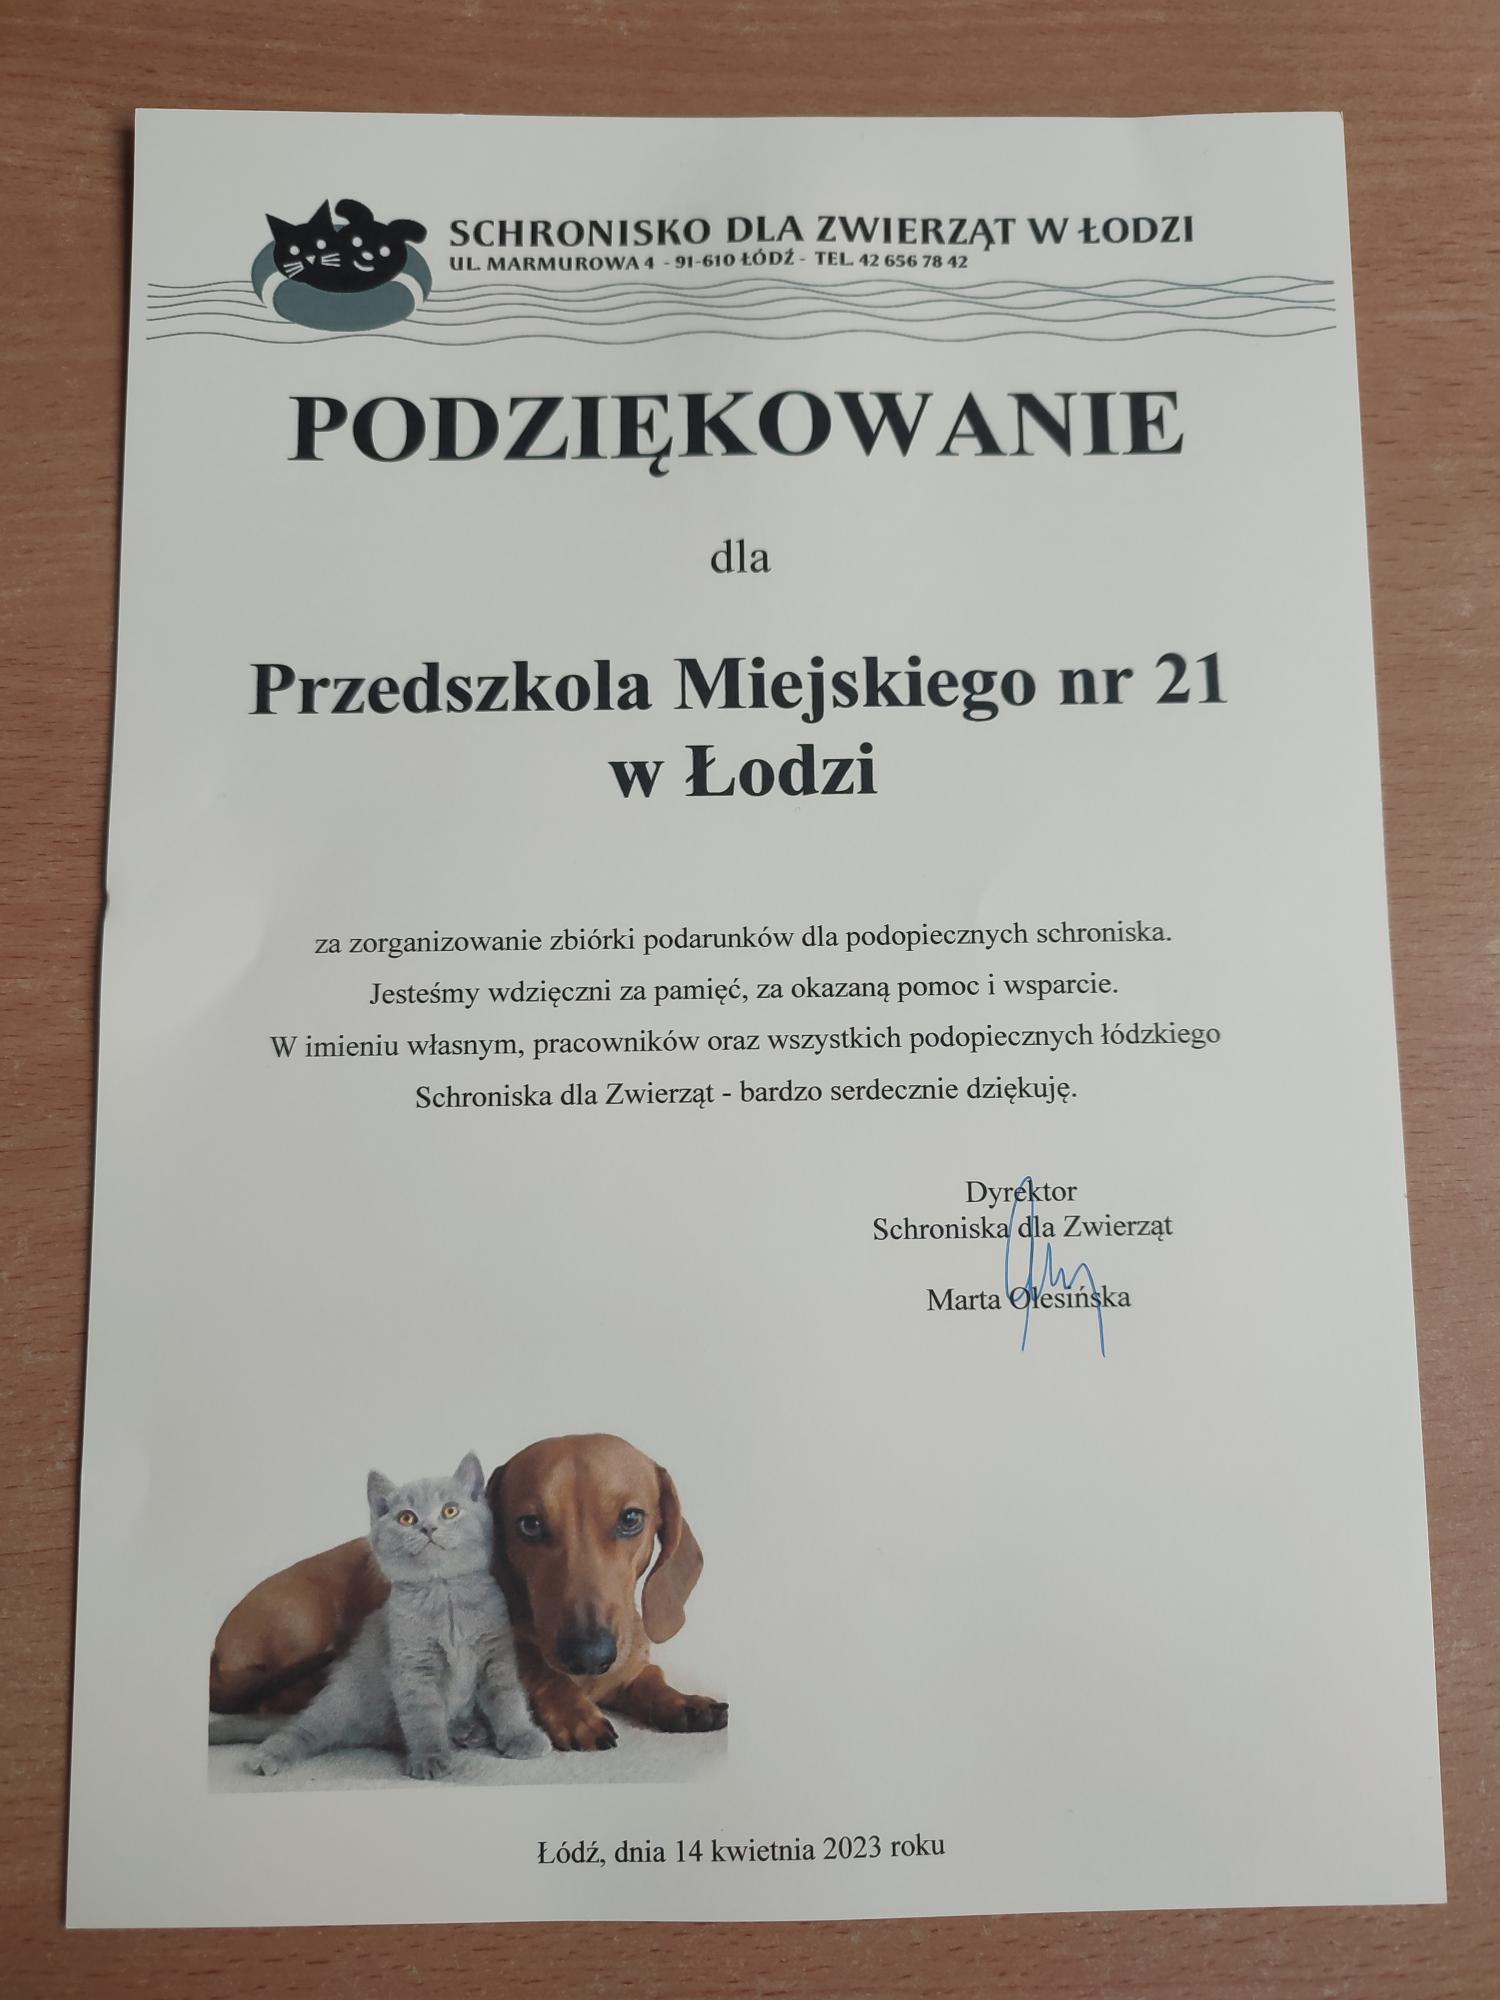 Zdjęcie dyplomu z podziękowaniami od schroniska dla zwierząt w Łodzi na ulicy Marmurowej dla Przedszkola Miejskiego nr 21 w Łodzi